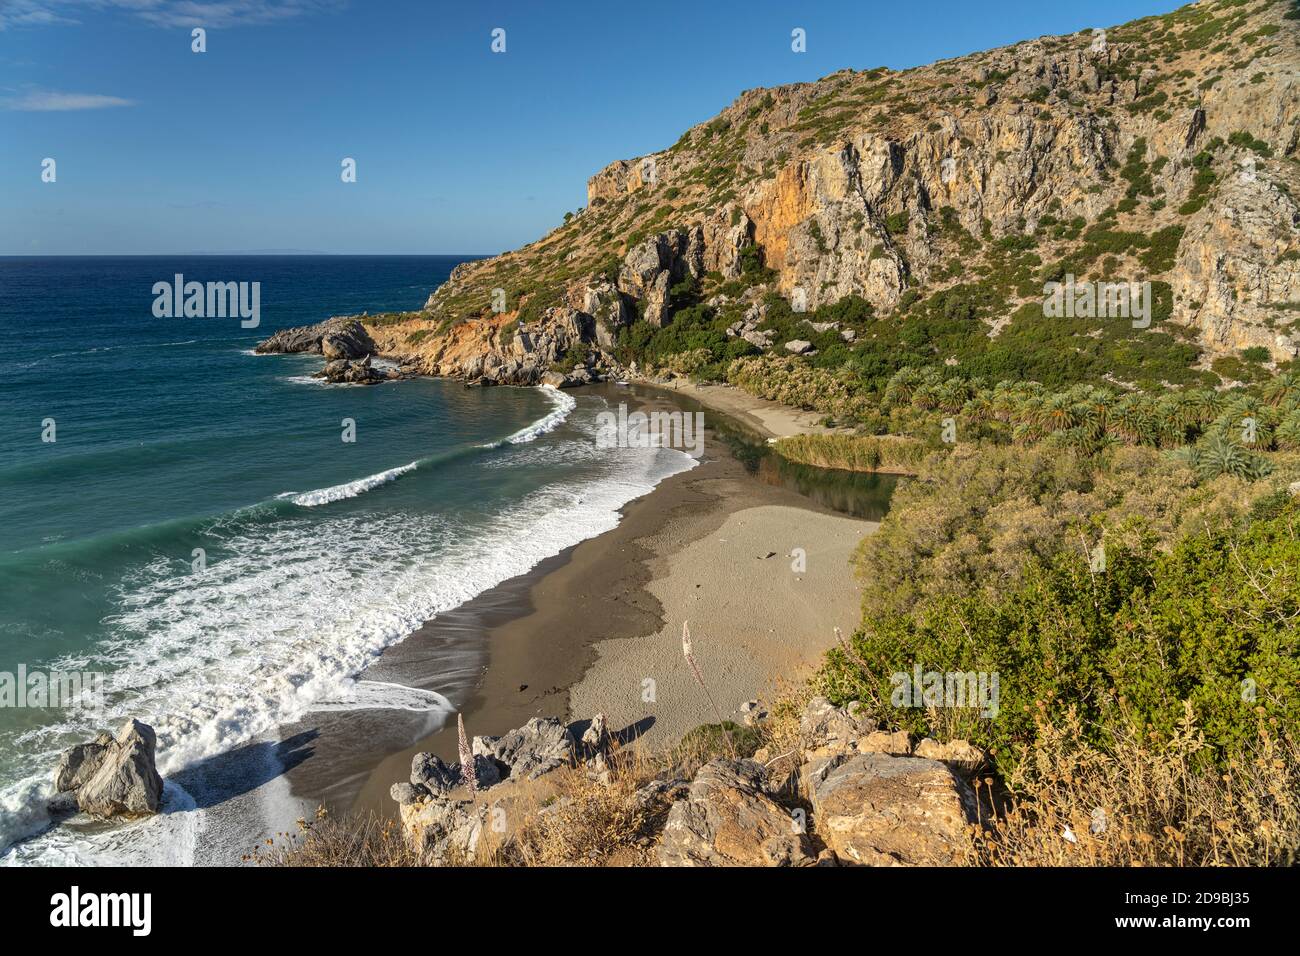 Der Palmenstruand von Preveli, Kreta, Griechenland, Europa | Preveli Palm beach, Creta, Grecia, Europa Foto de stock